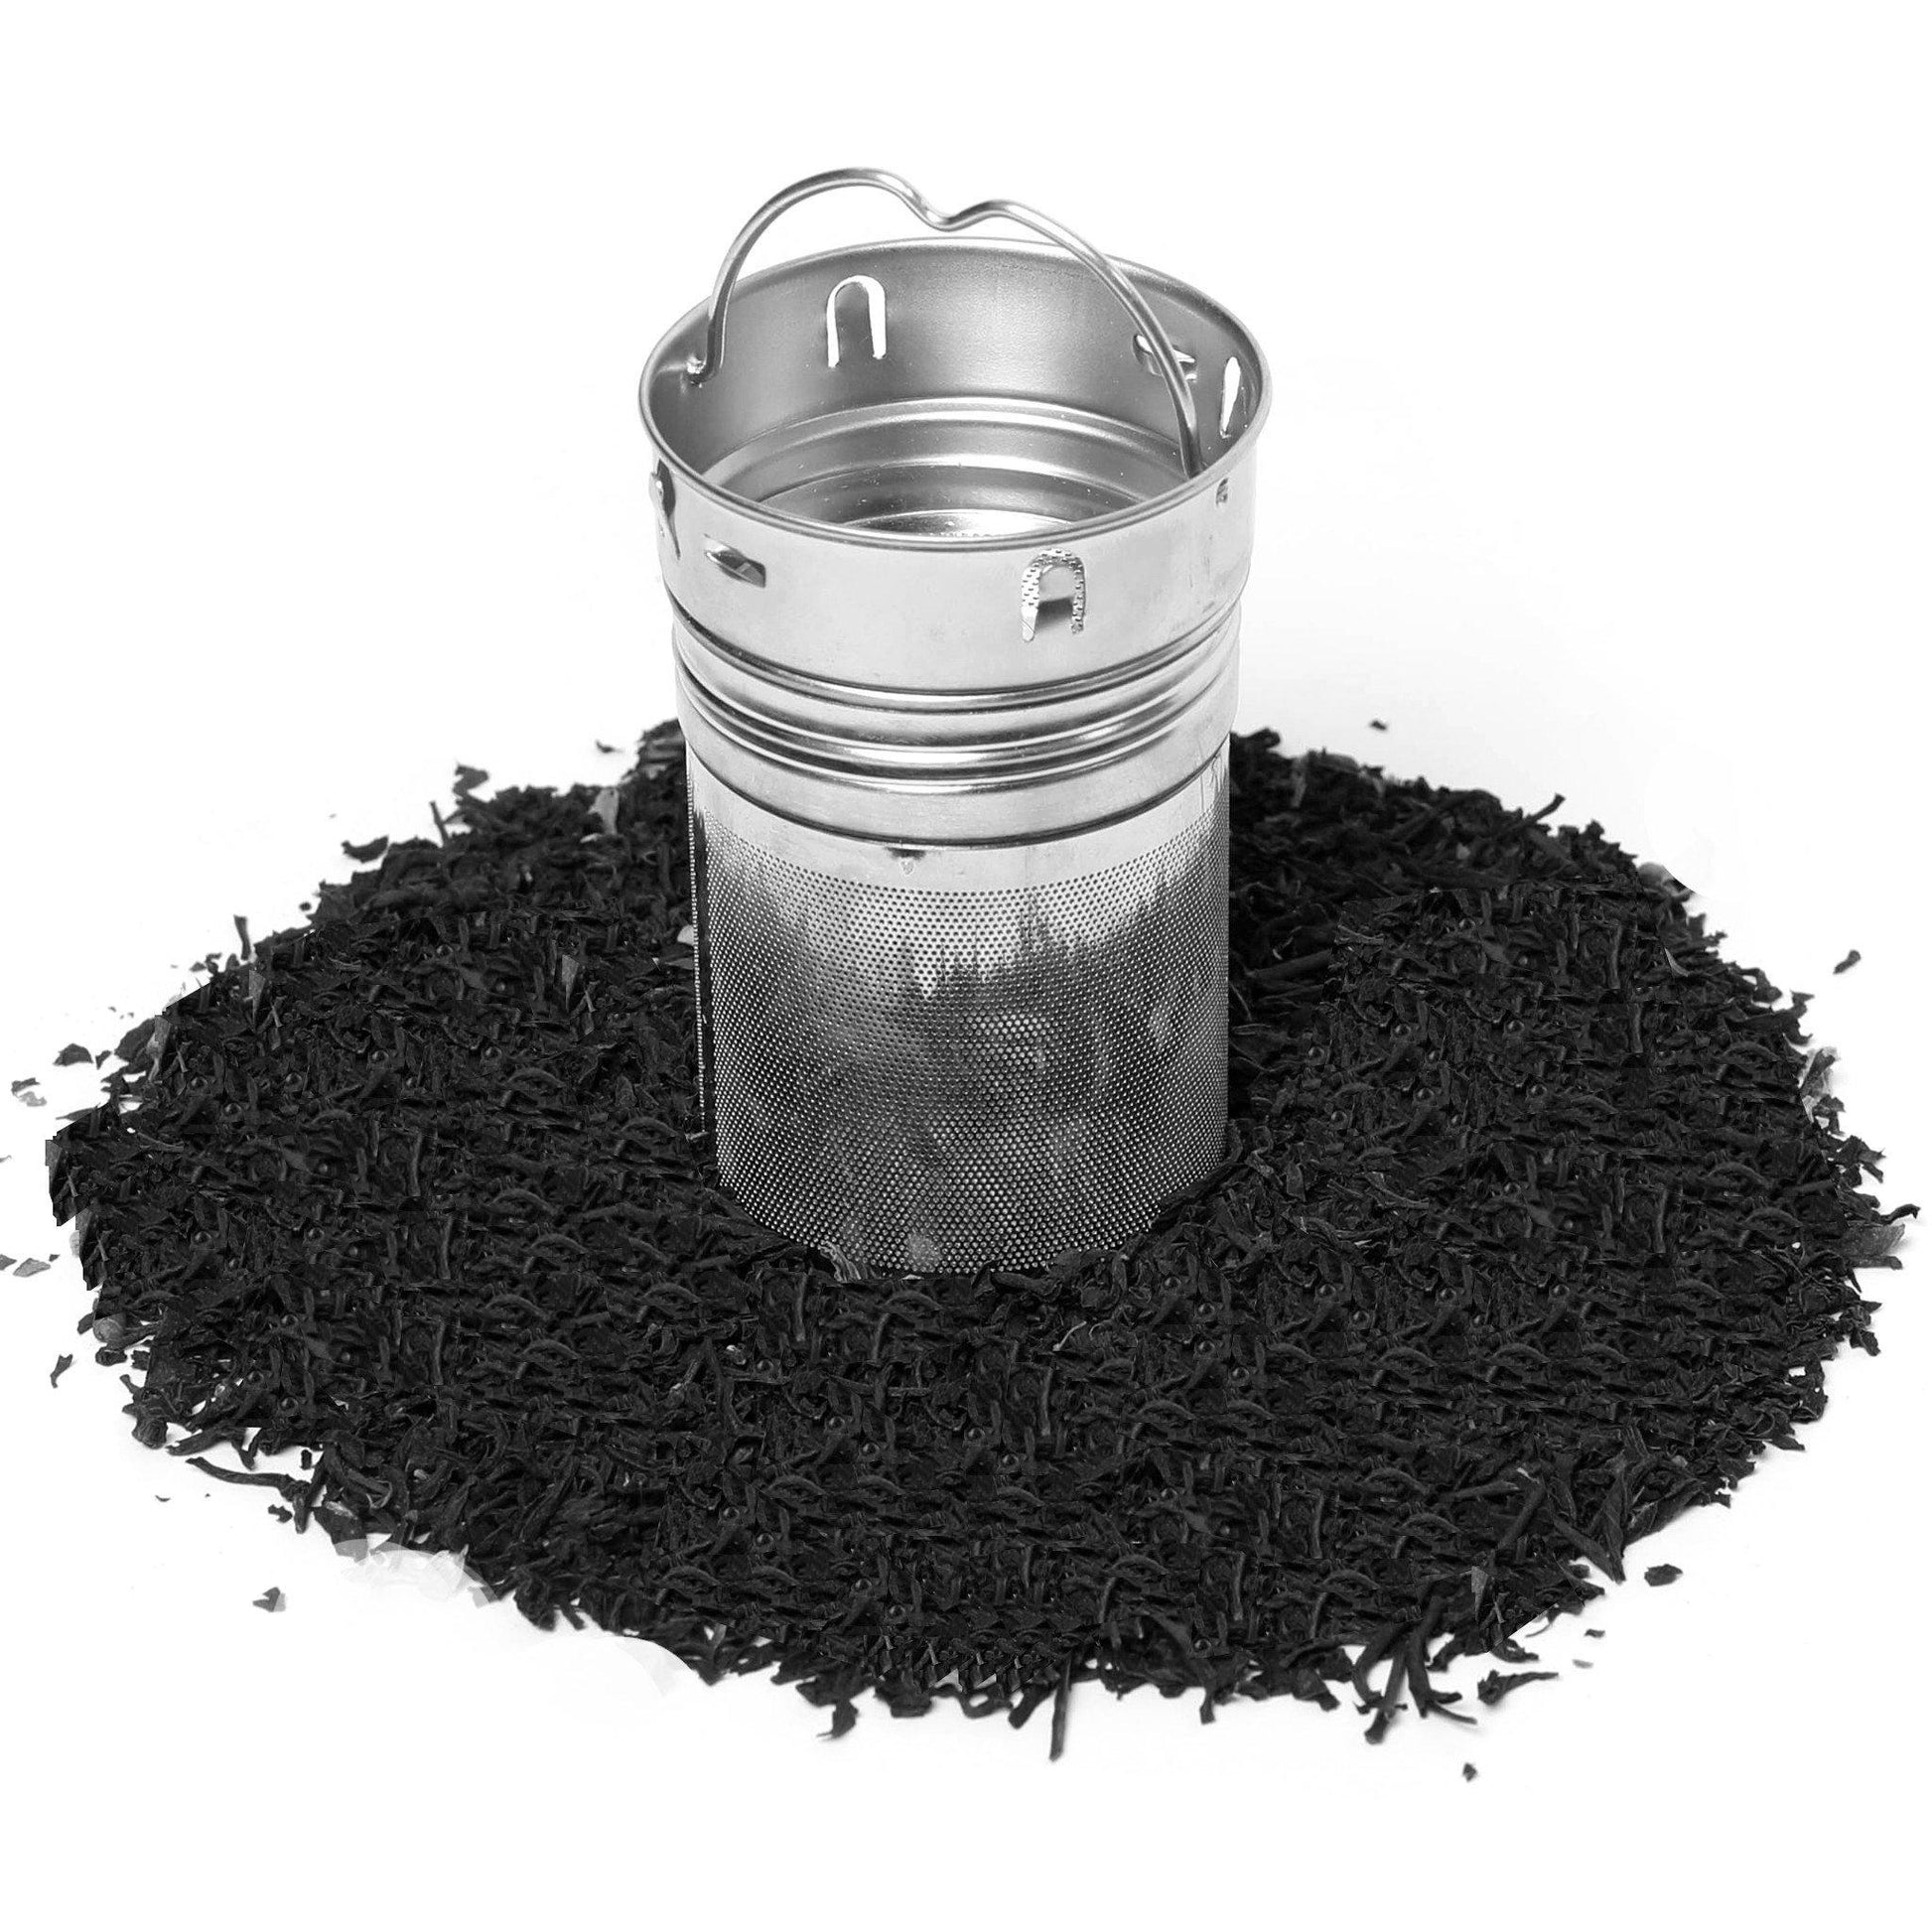 Pommy - English Breakfast Tea - Loose Leaf Black Tea Blend - mykodu